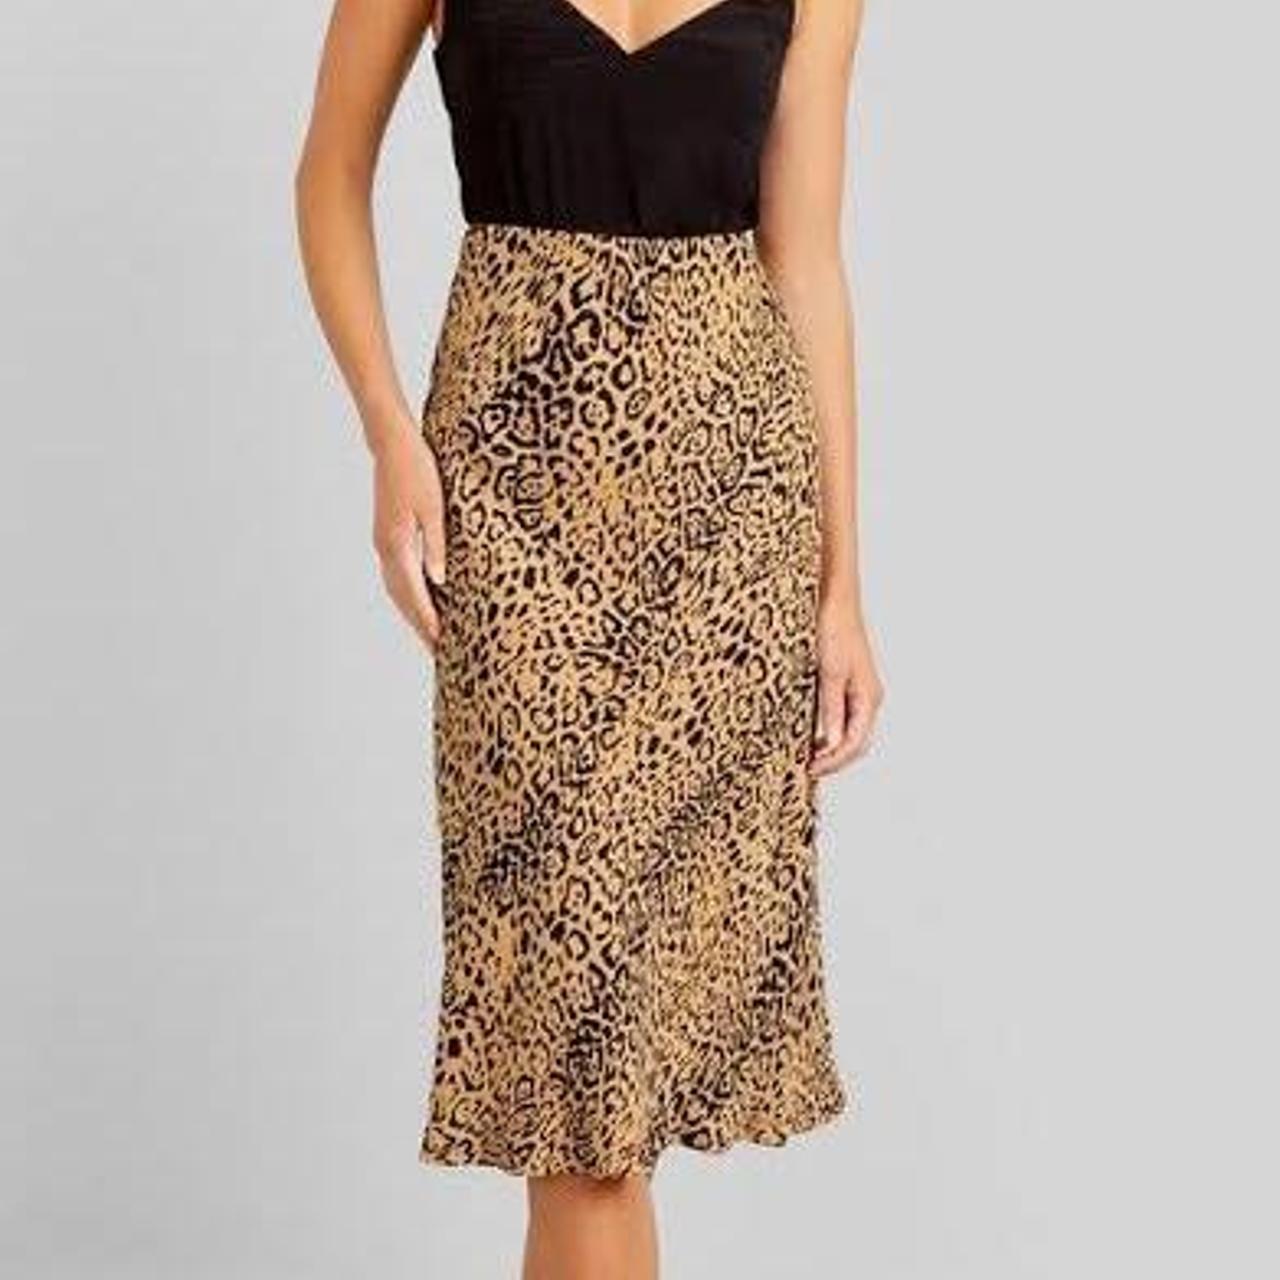 Kookai jaguar print midi skirt with elastic... - Depop